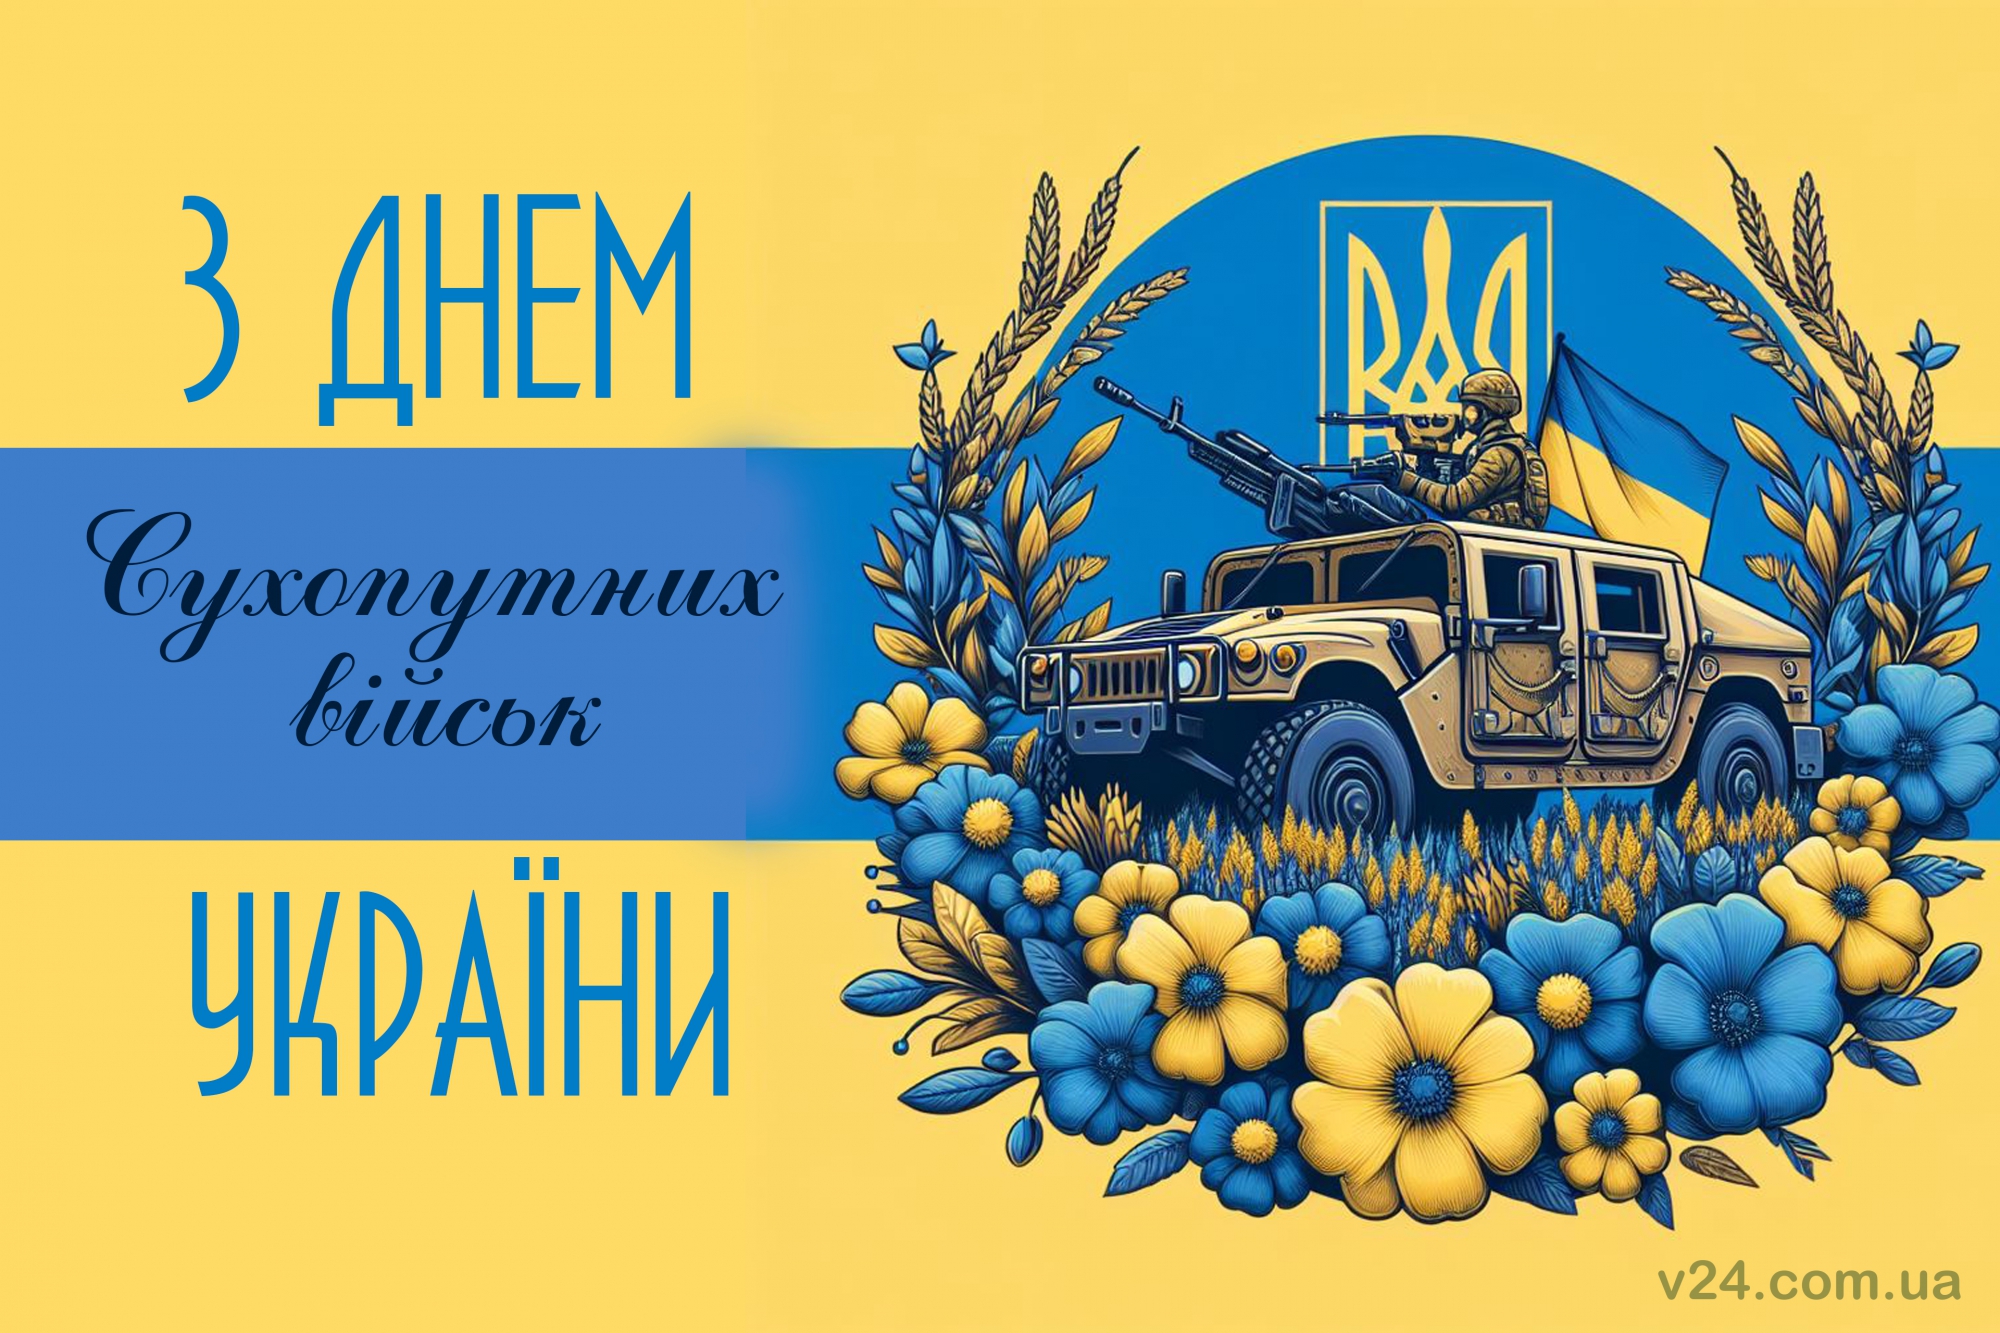 Вітання з професійним святом збройних сил України!